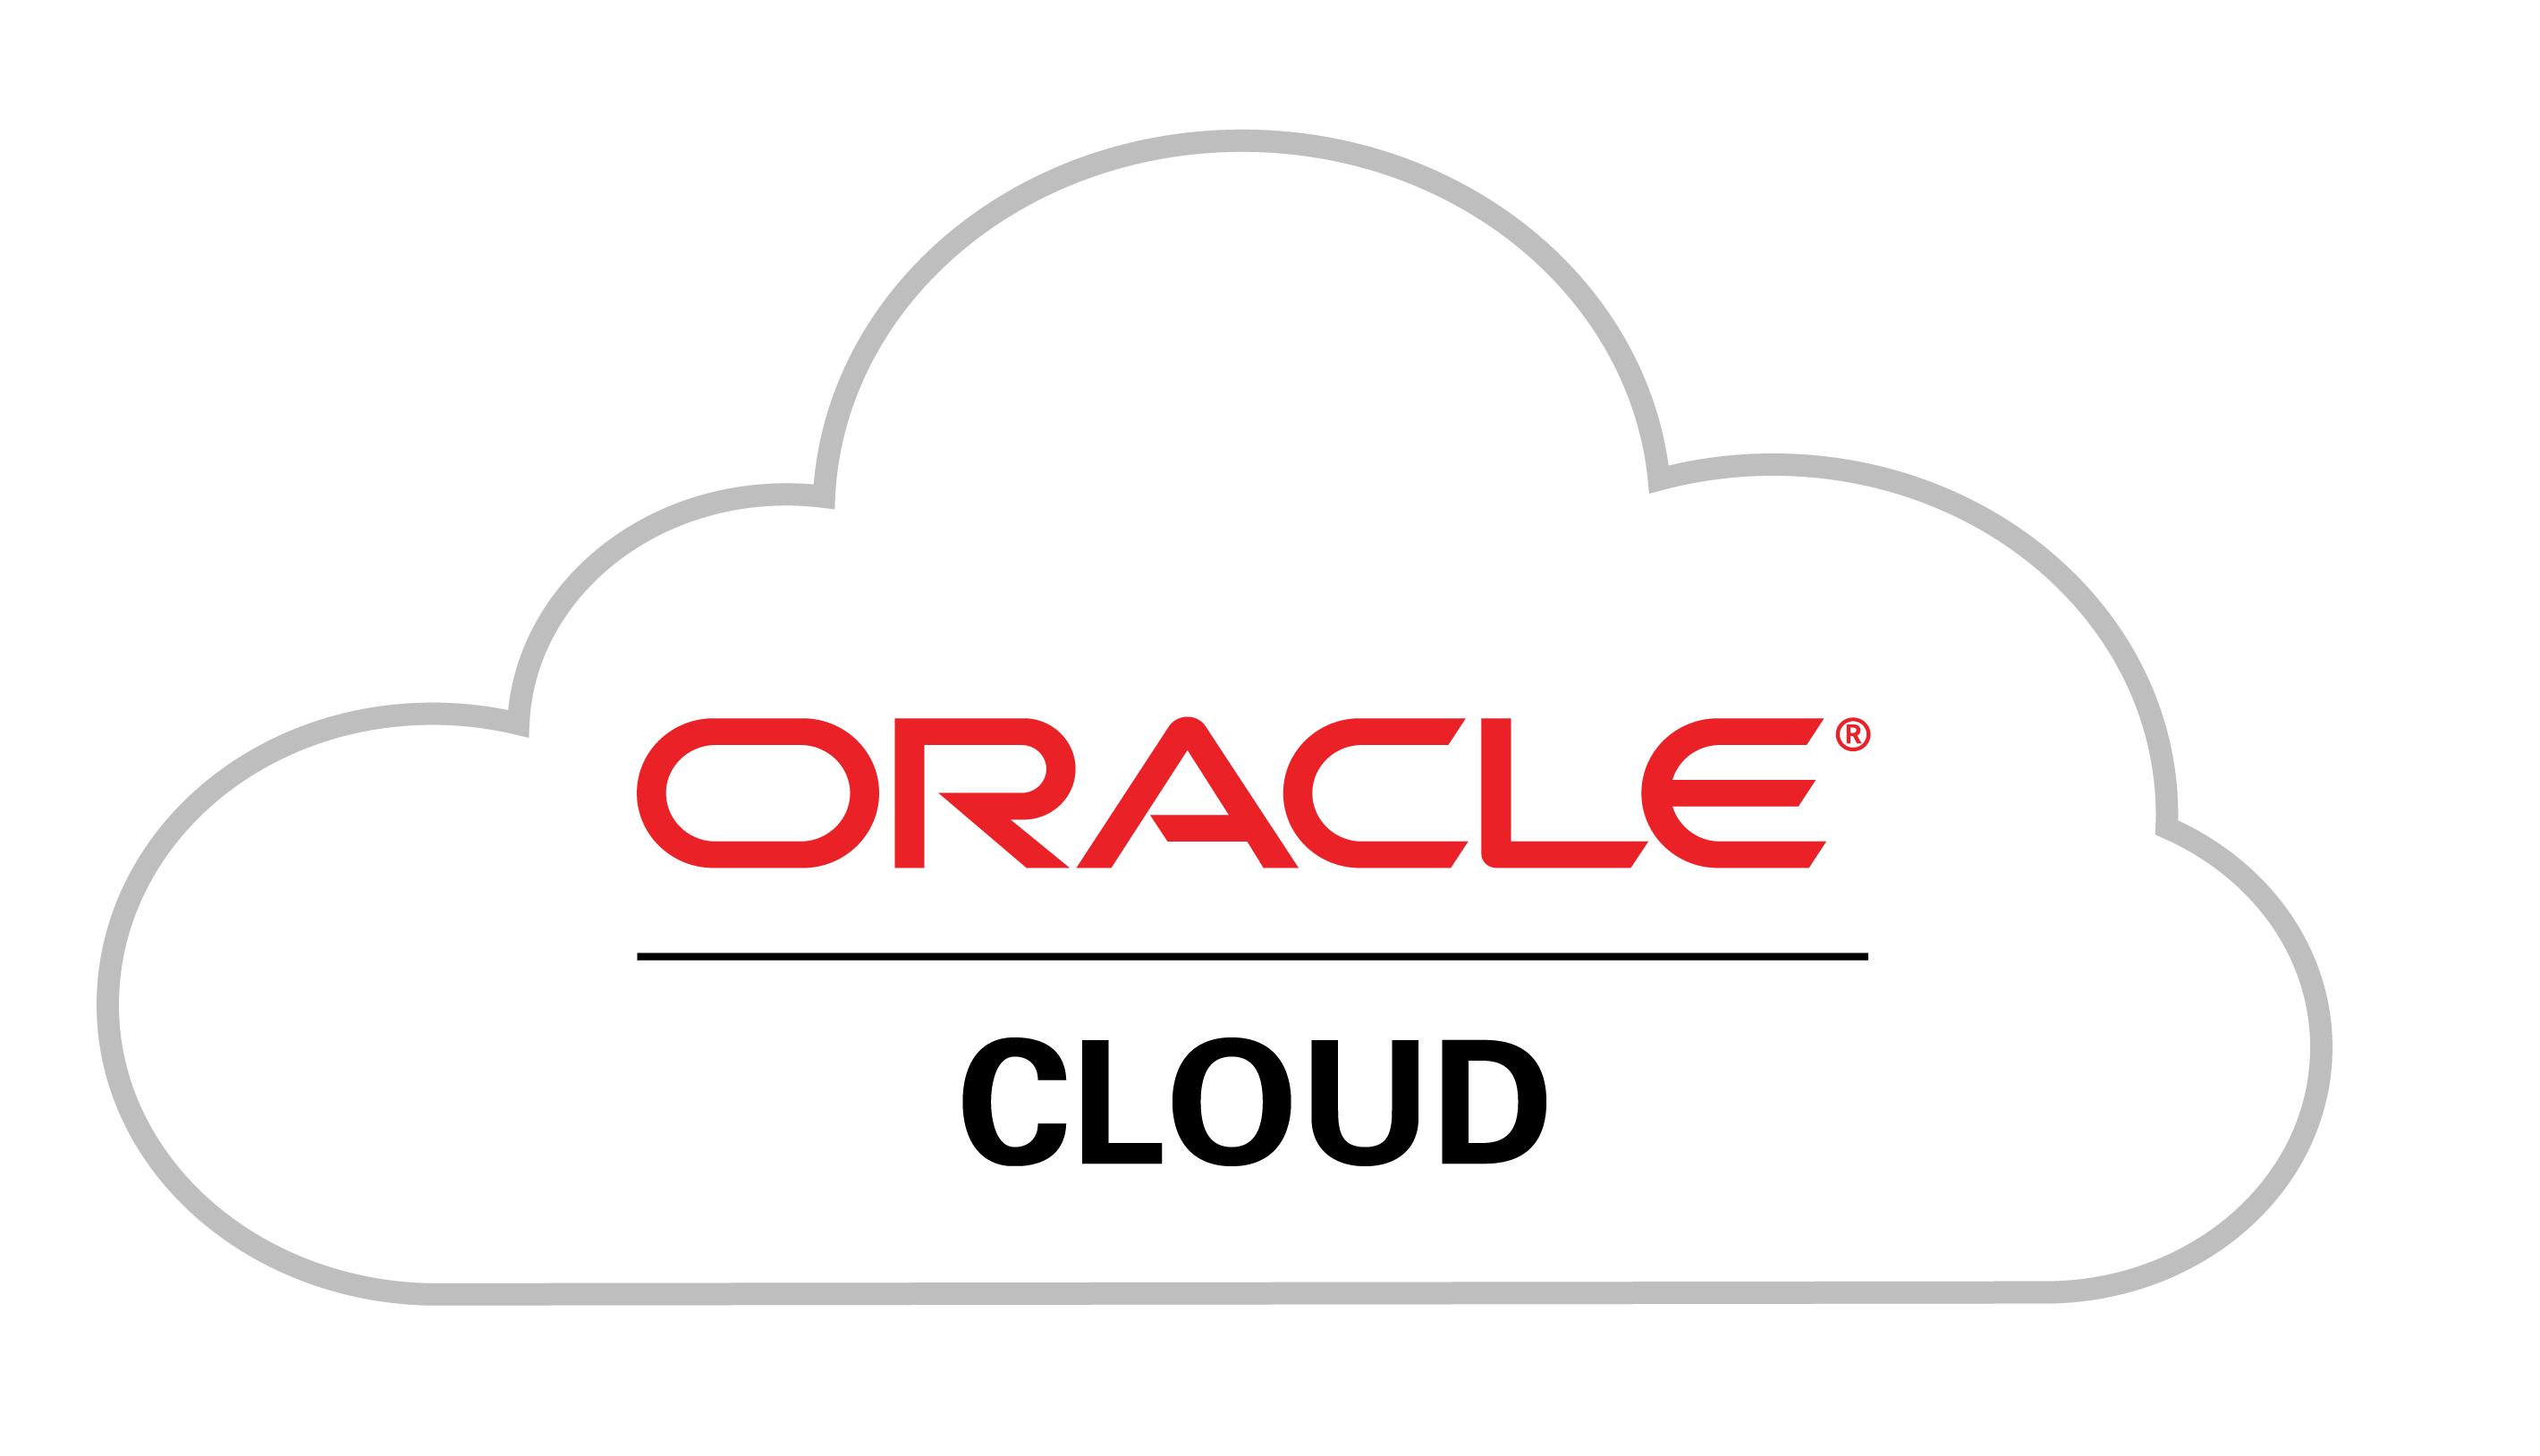 La tecnología en la nube está evolucionando rápidamente con la comercialización diaria de nuevas capacidades. Oracle presenta 5 razones para las empresas